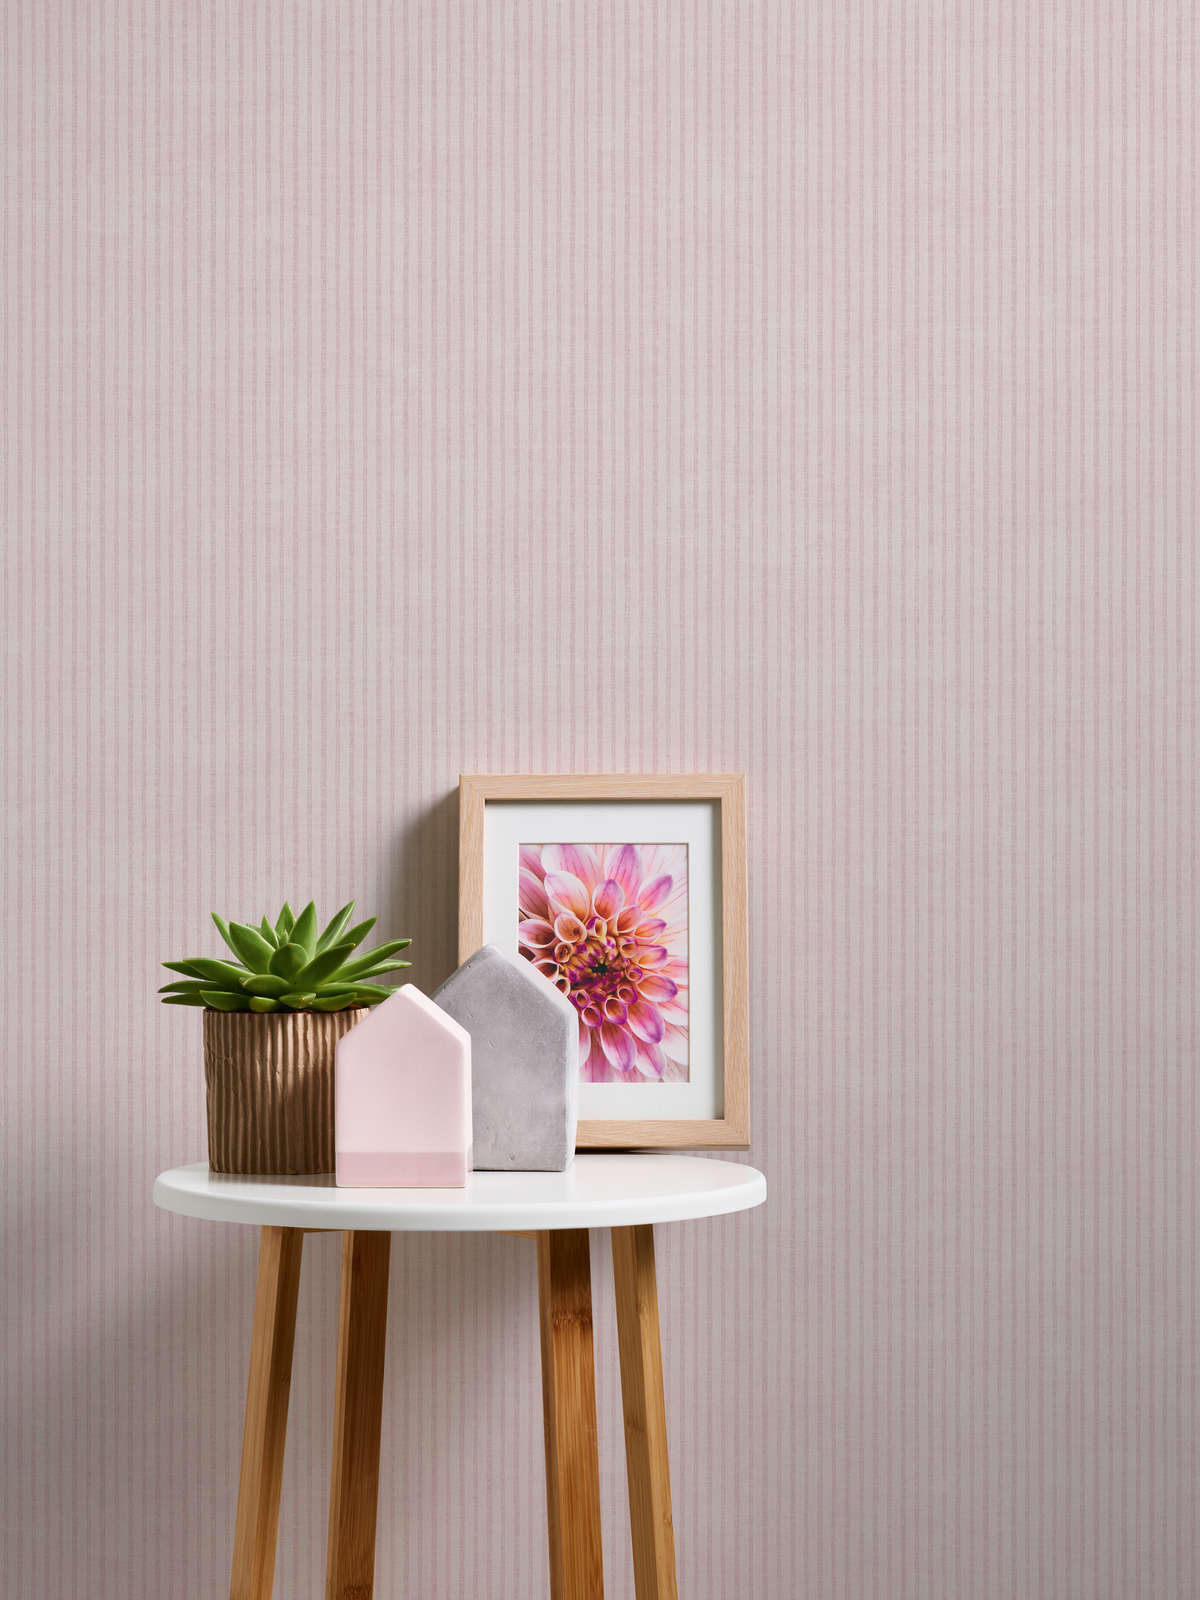             Papier peint à rayures, style maison de campagne - crème, rose
        